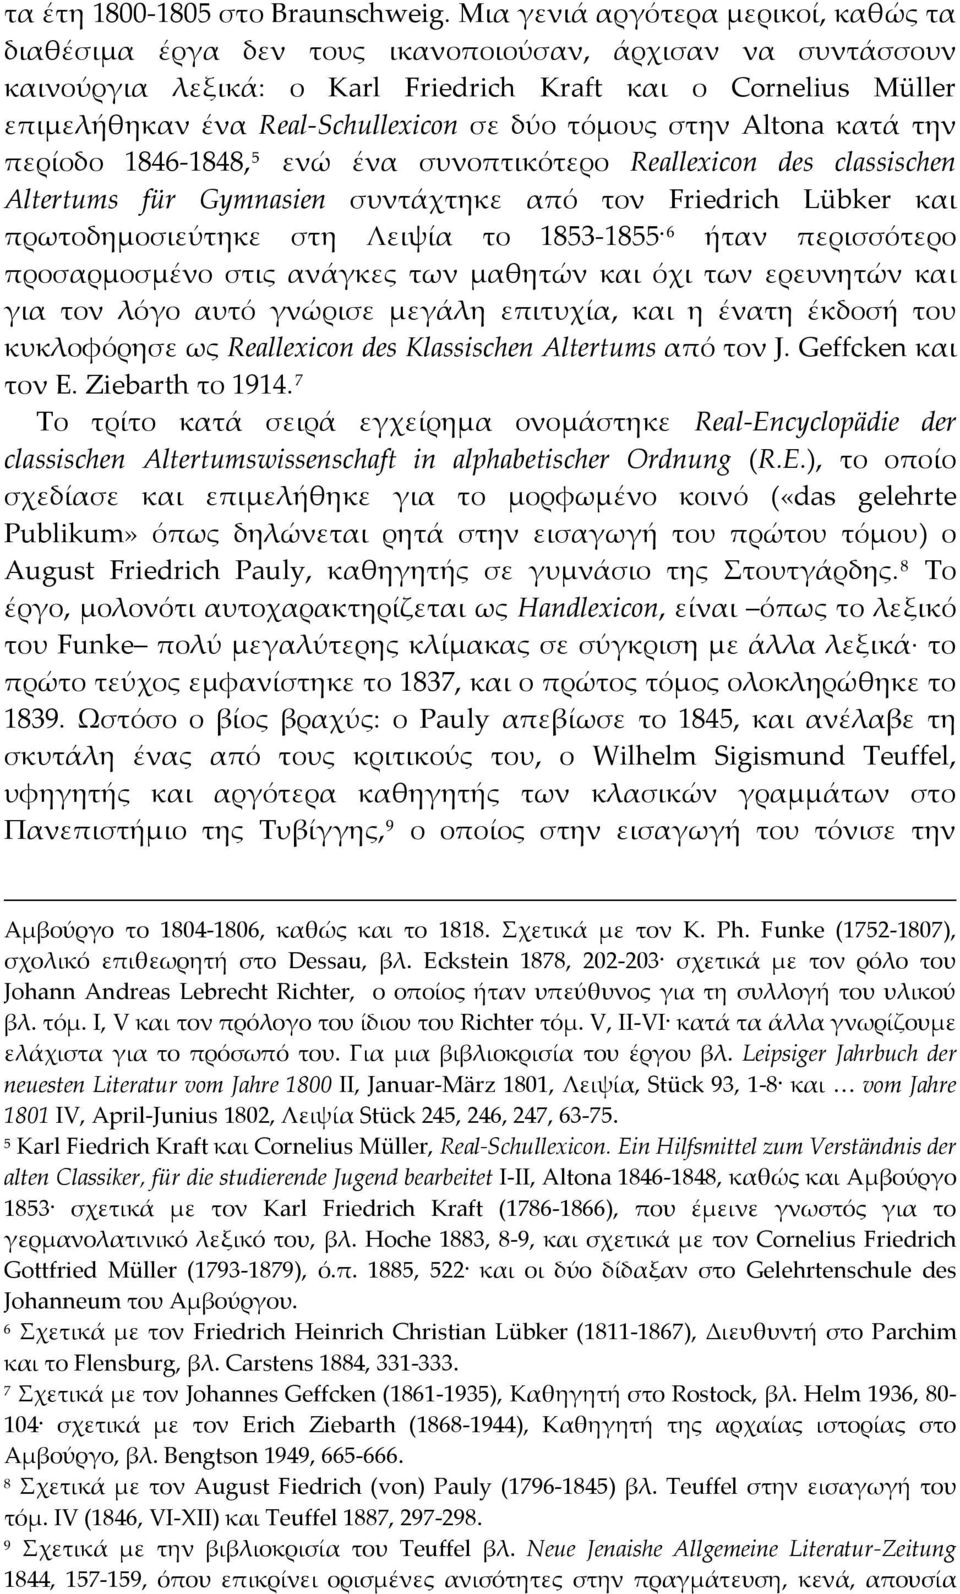 σε δύο τόμους στην Altona κατά την περίοδο 1846 1848, 5 ενώ ένα συνοπτικότερο Reallexicon des classischen Altertums für Gymnasien συντάχτηκε από τον Friedrich Lübker και πρωτοδημοσιεύτηκε στη Λειψία